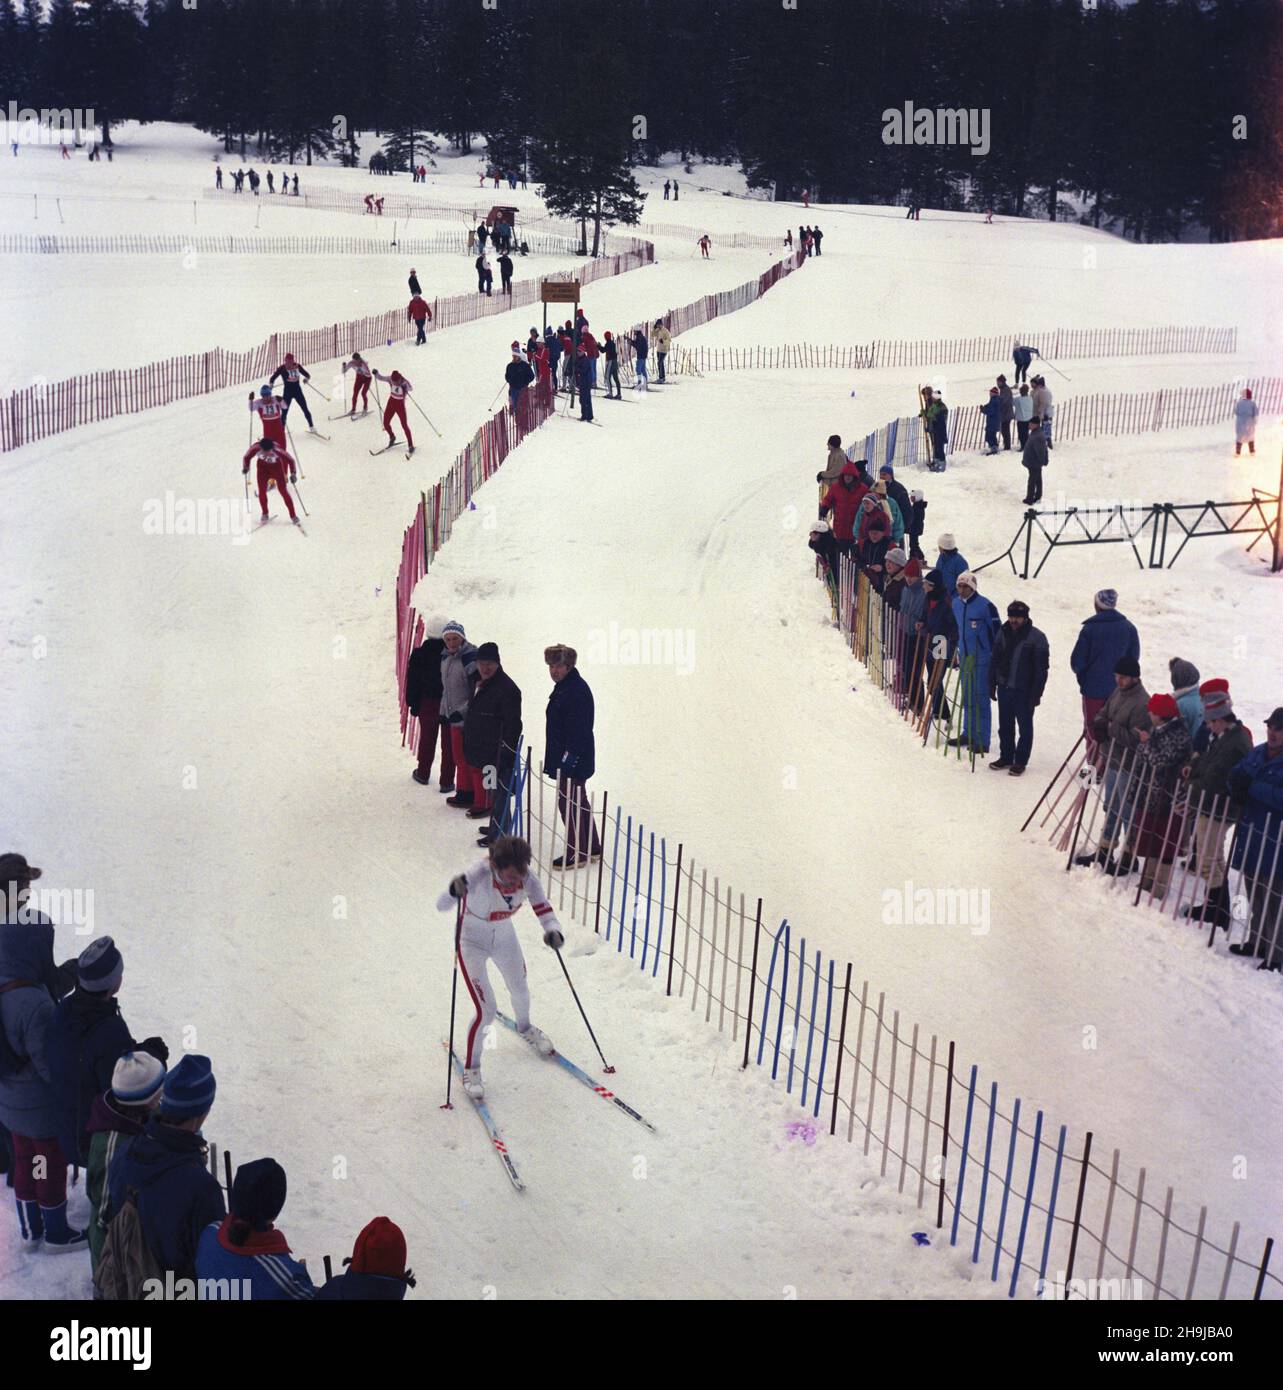 Zakopane 31.12.1986.Sylwestrowy Bieg Narciarski. ka PAP/Stanis³aw MomotZakopane, le 31 décembre 1986.Course de ski de la Saint-Sylvestre. ka PAP/Stanislaw Momot Banque D'Images